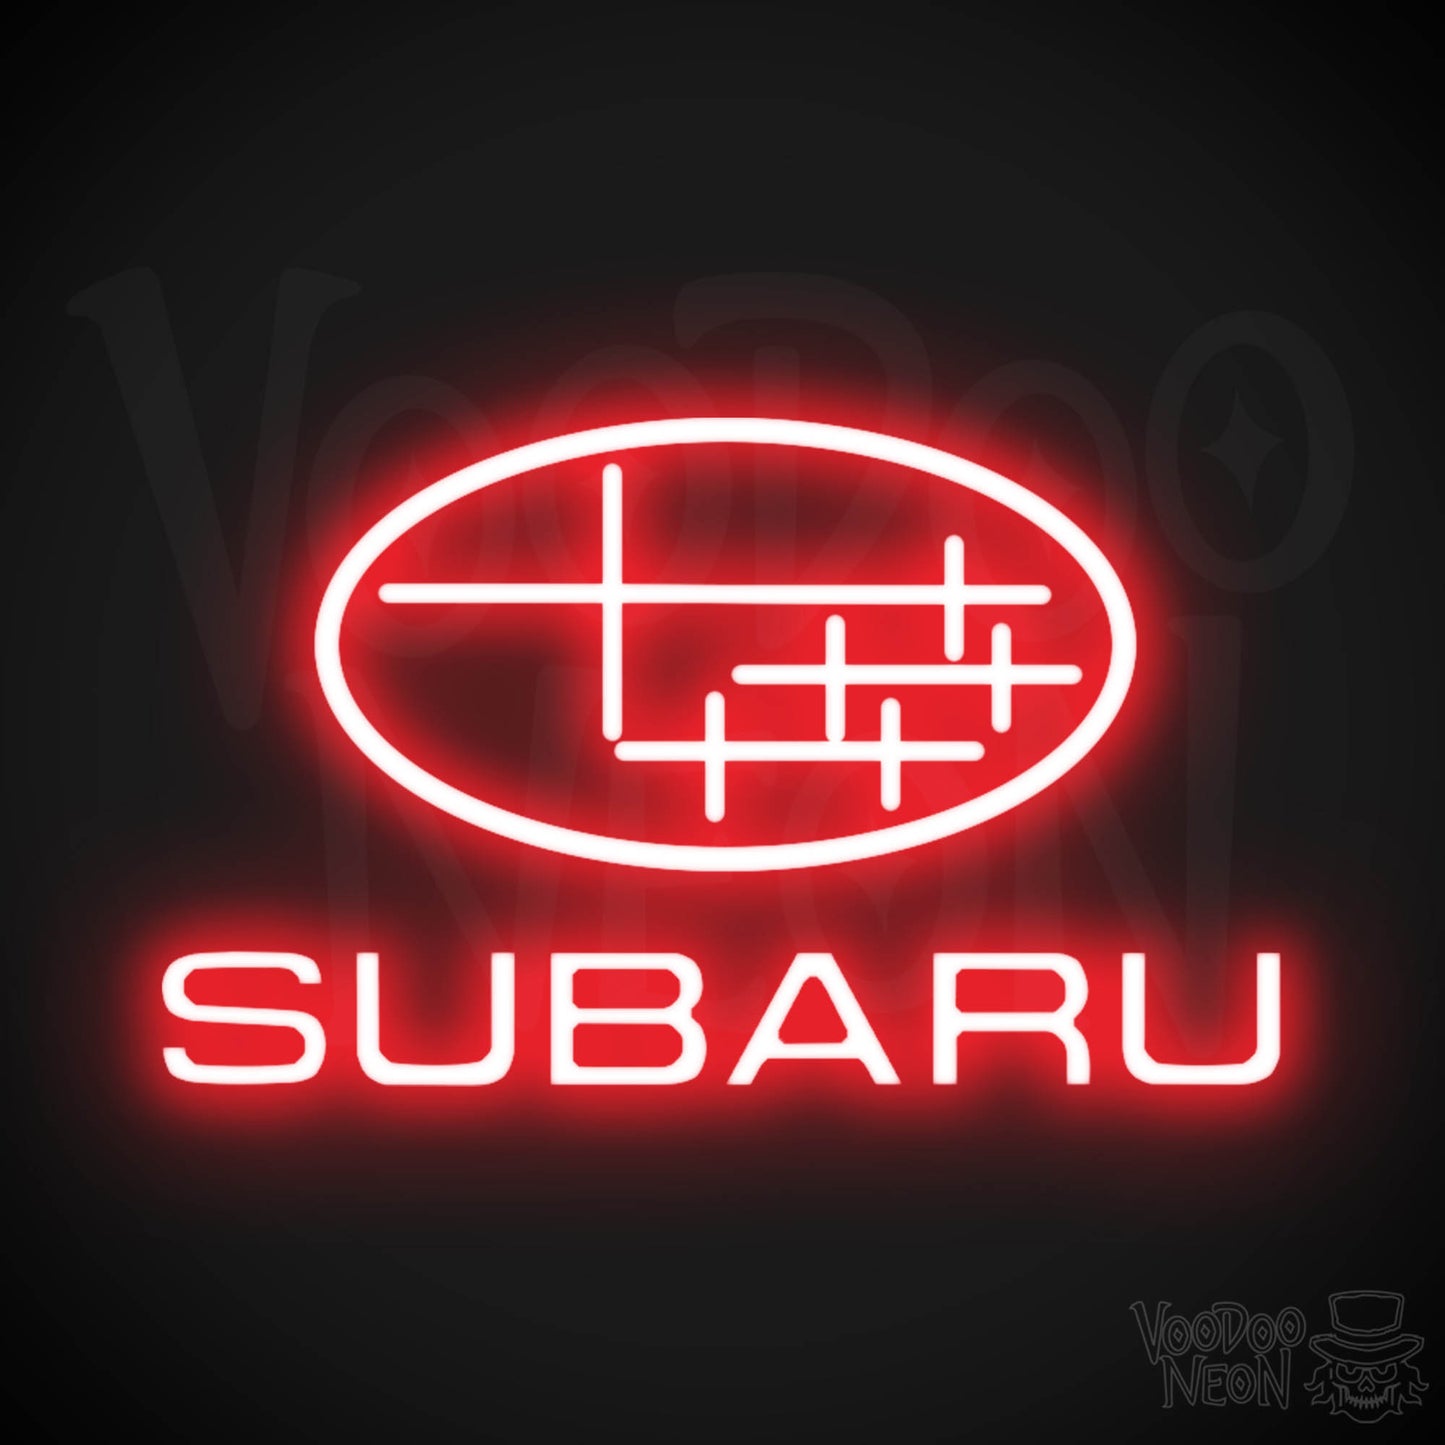 Subaru Neon Sign - Subaru Sign - Subaru Decor - Wall Art - Color Red